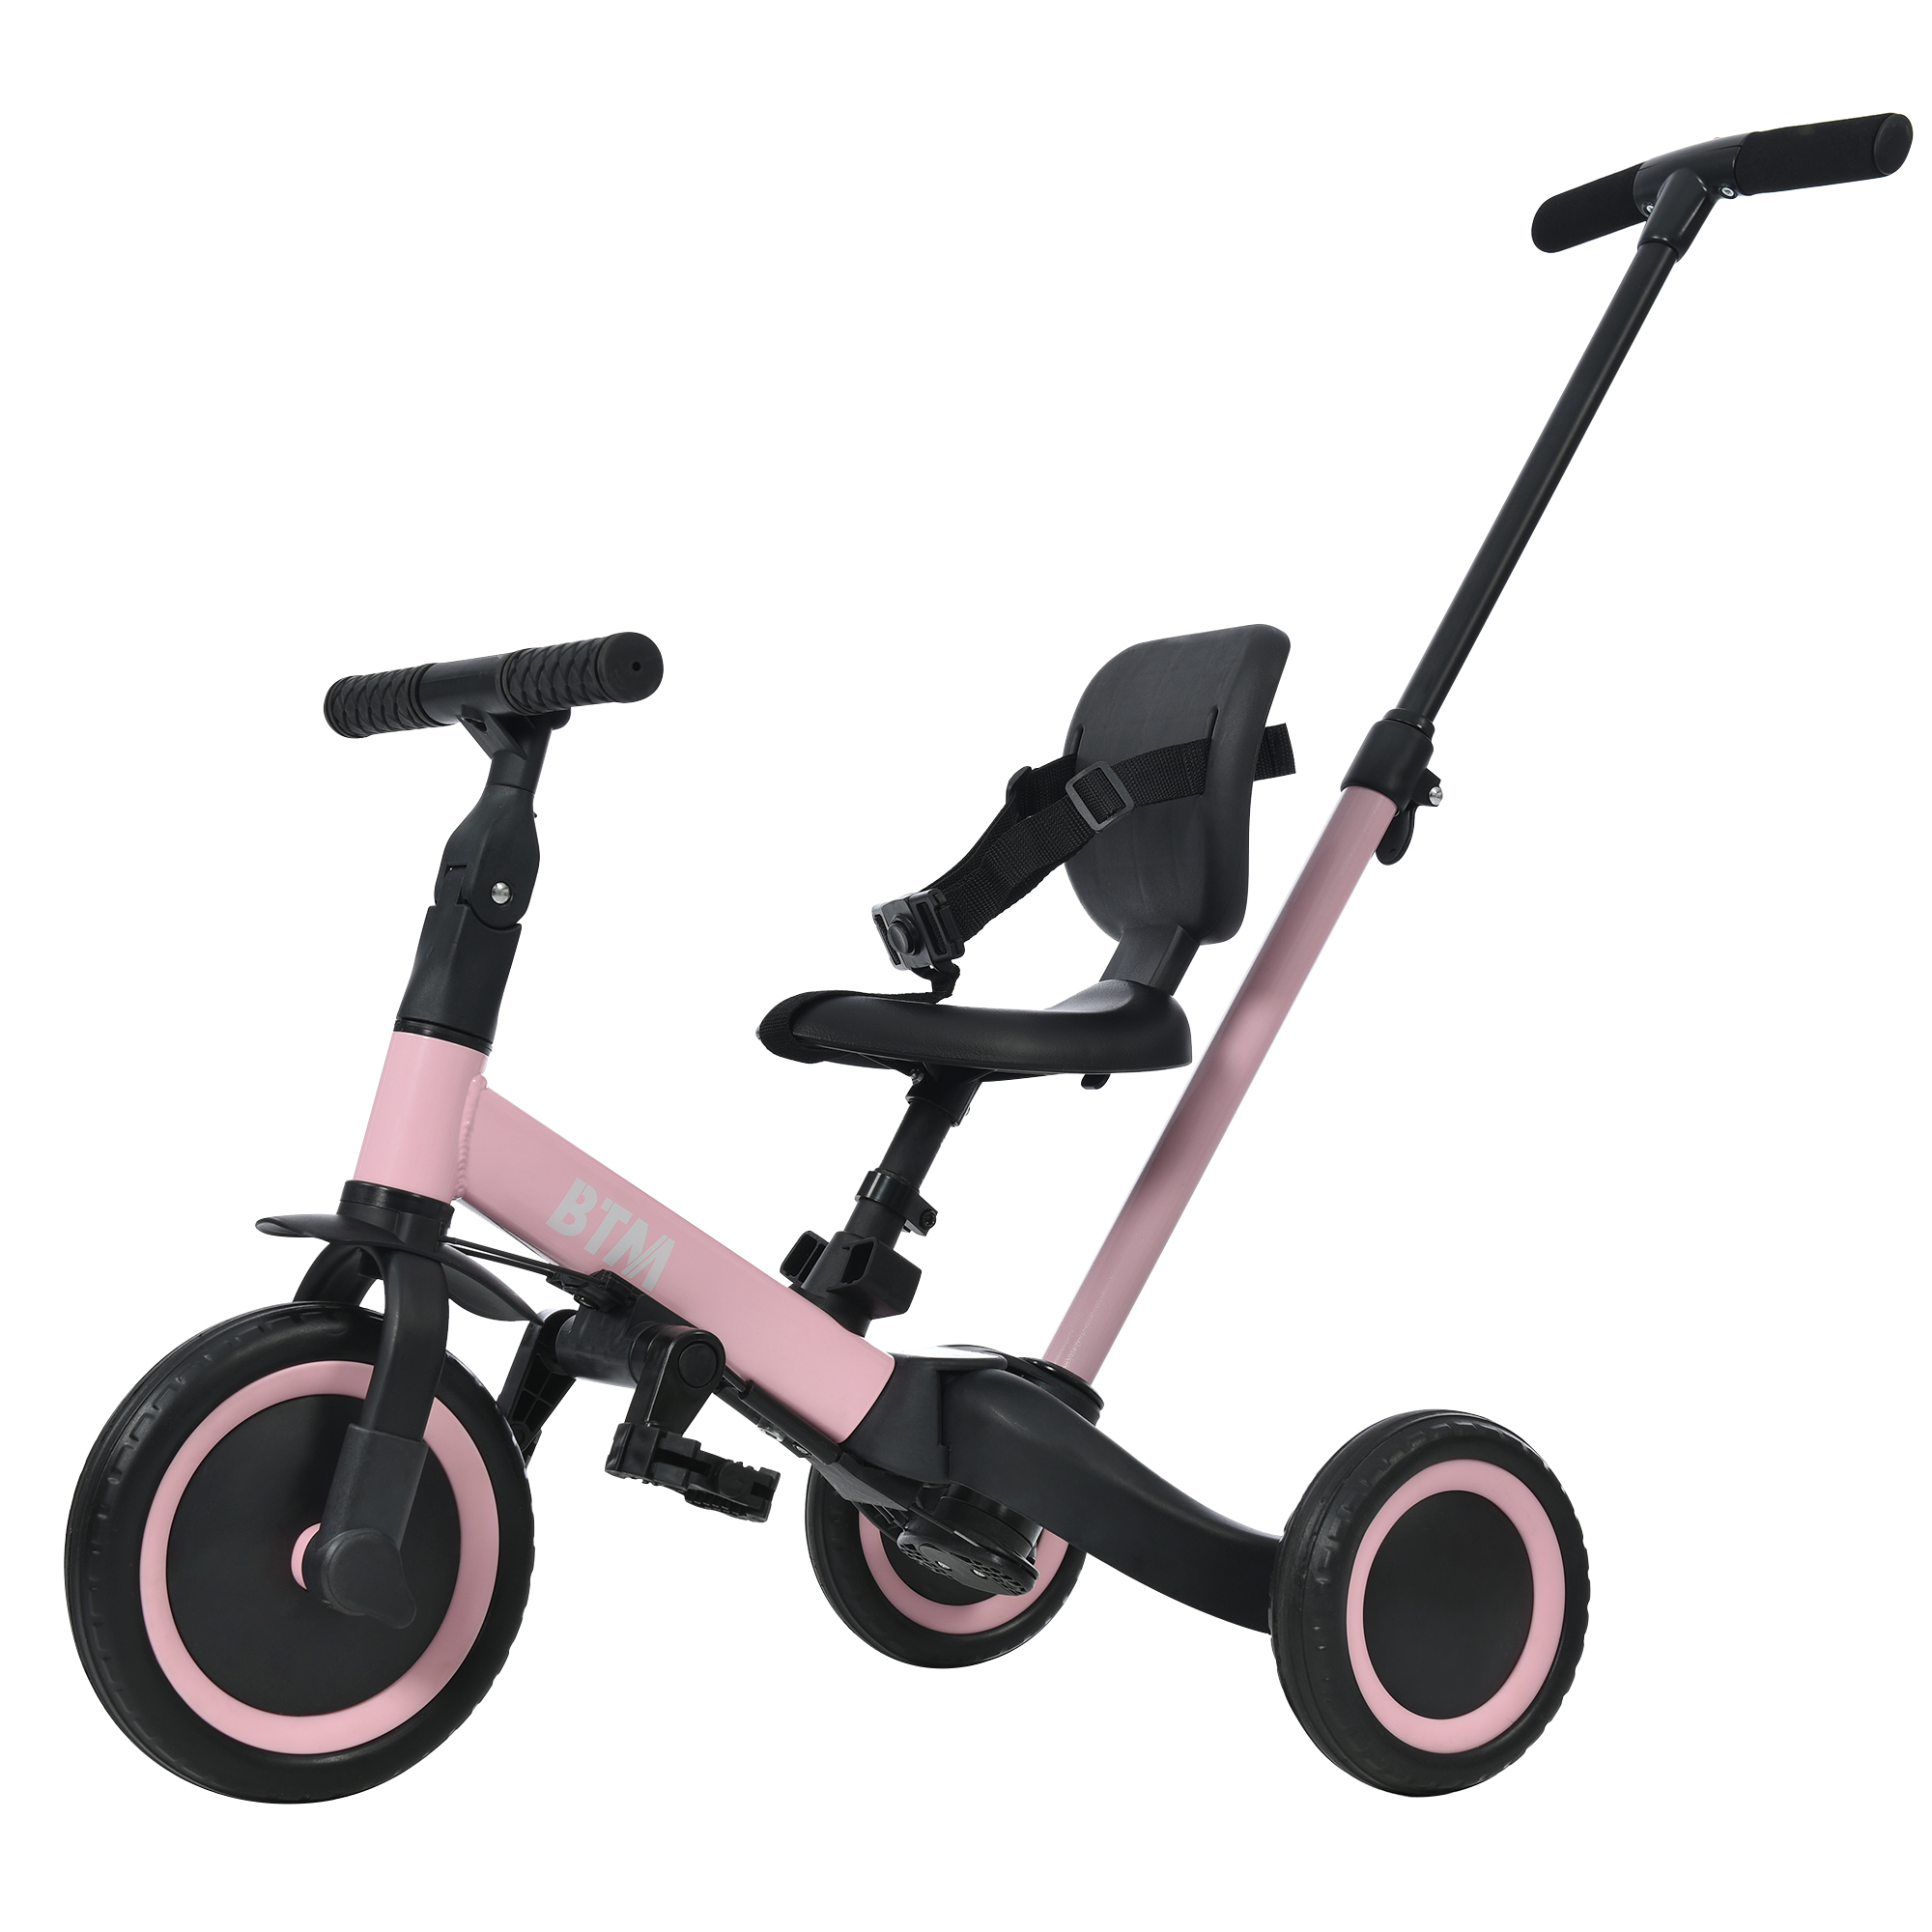 子供用三輪車 5in1 キックバイク BTM 三輪車のりもの 安全ベルト付き コントロールバー付き 自転車 乗用玩具 軽量 プレゼント